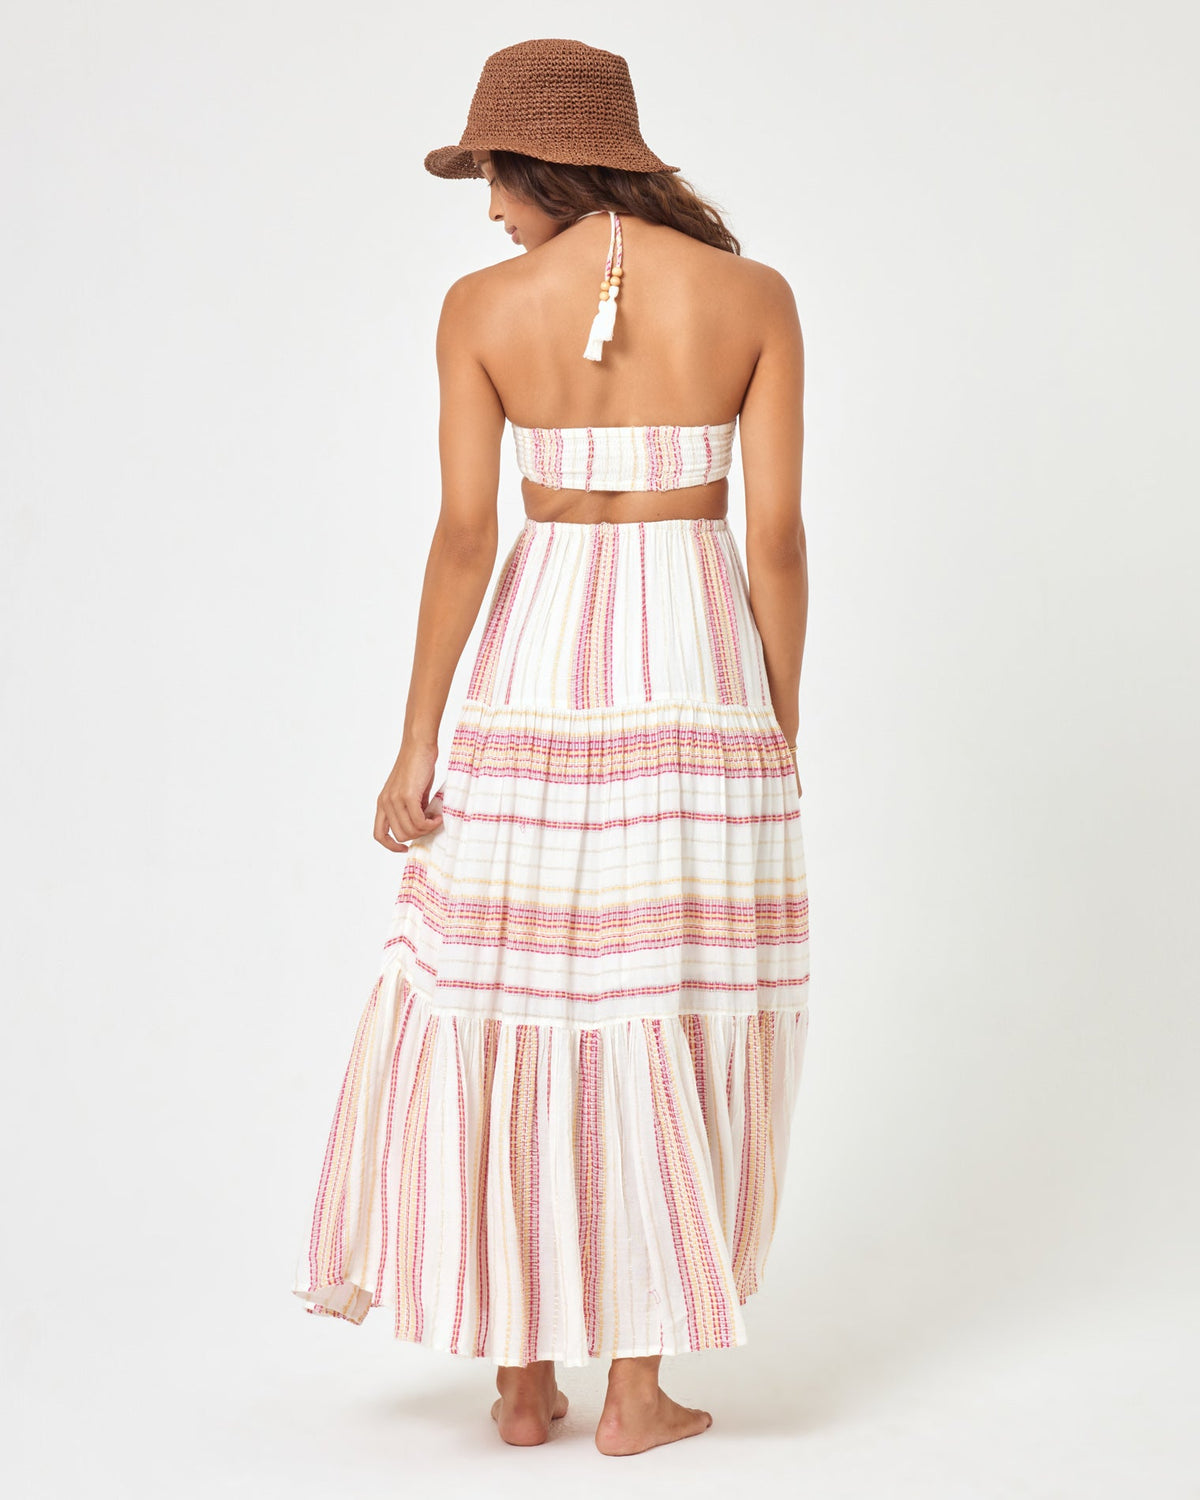 Jenevieve Dress Siesta Stripe | Model: Natalie (size: S) | Hover